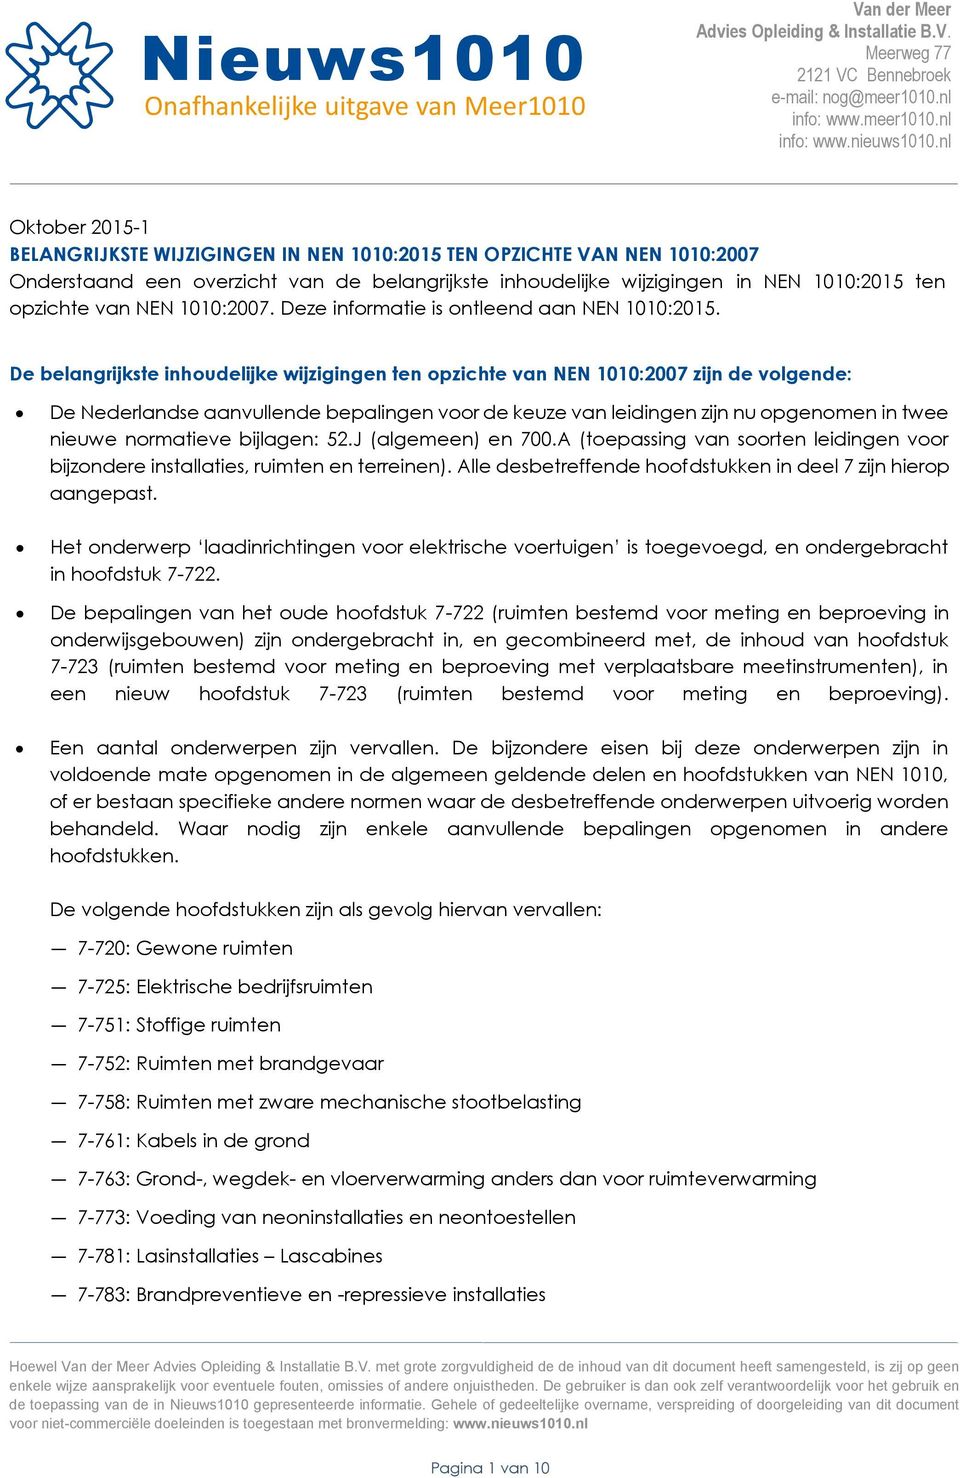 De belangrijkste inhoudelijke wijzigingen ten opzichte van NEN 1010:2007 zijn de volgende: De Nederlandse aanvullende bepalingen voor de keuze van leidingen zijn nu opgenomen in twee nieuwe